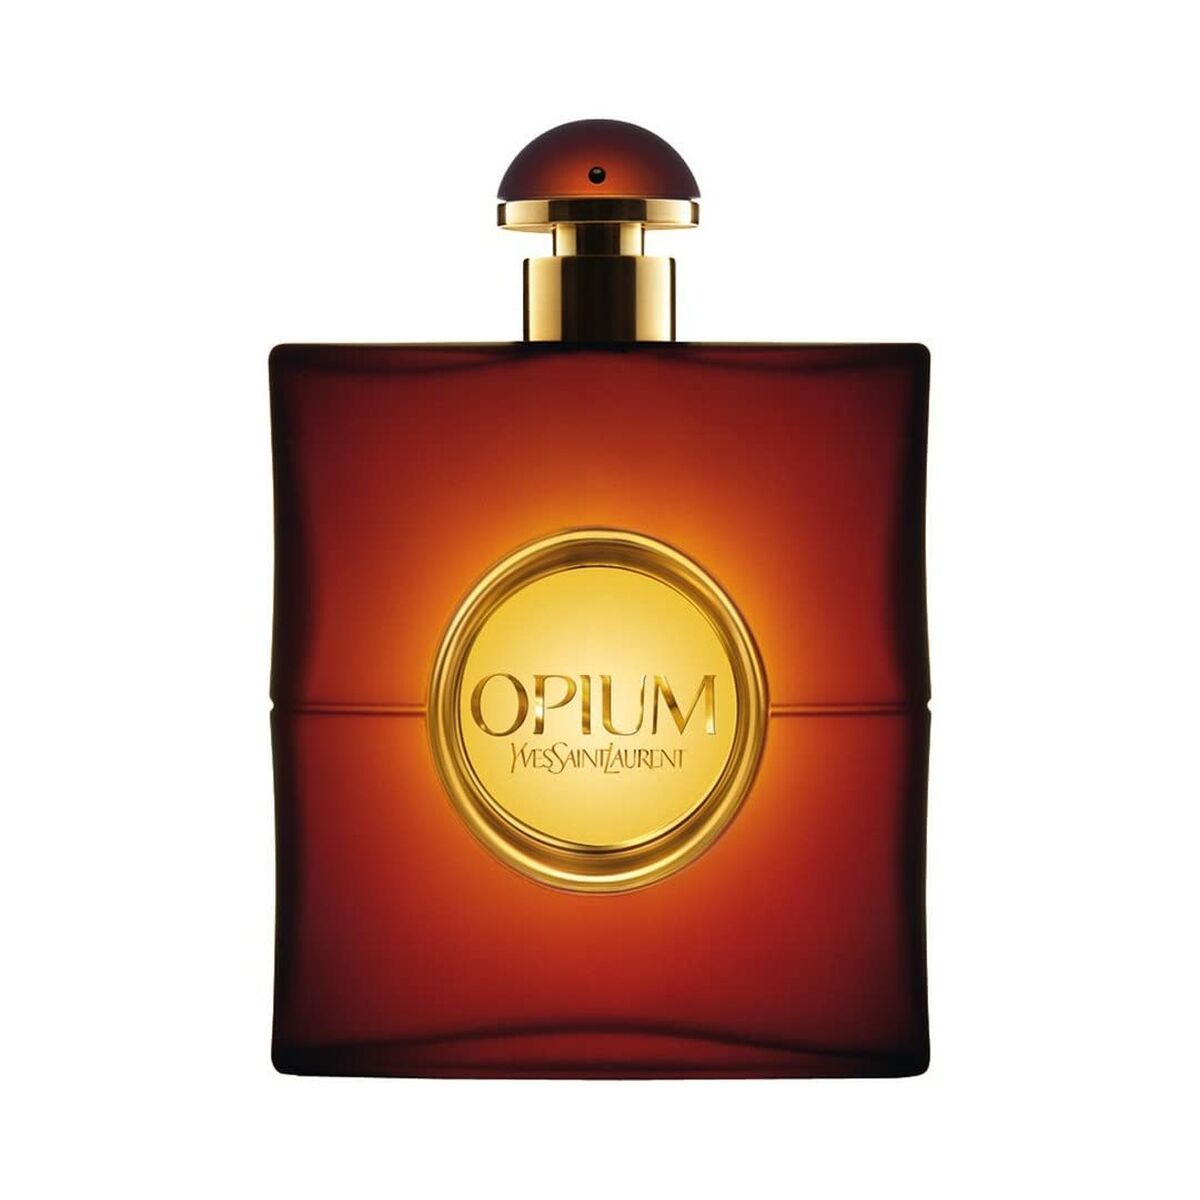 Women's Perfume Yves Saint Laurent 56348 EDP 50 ml